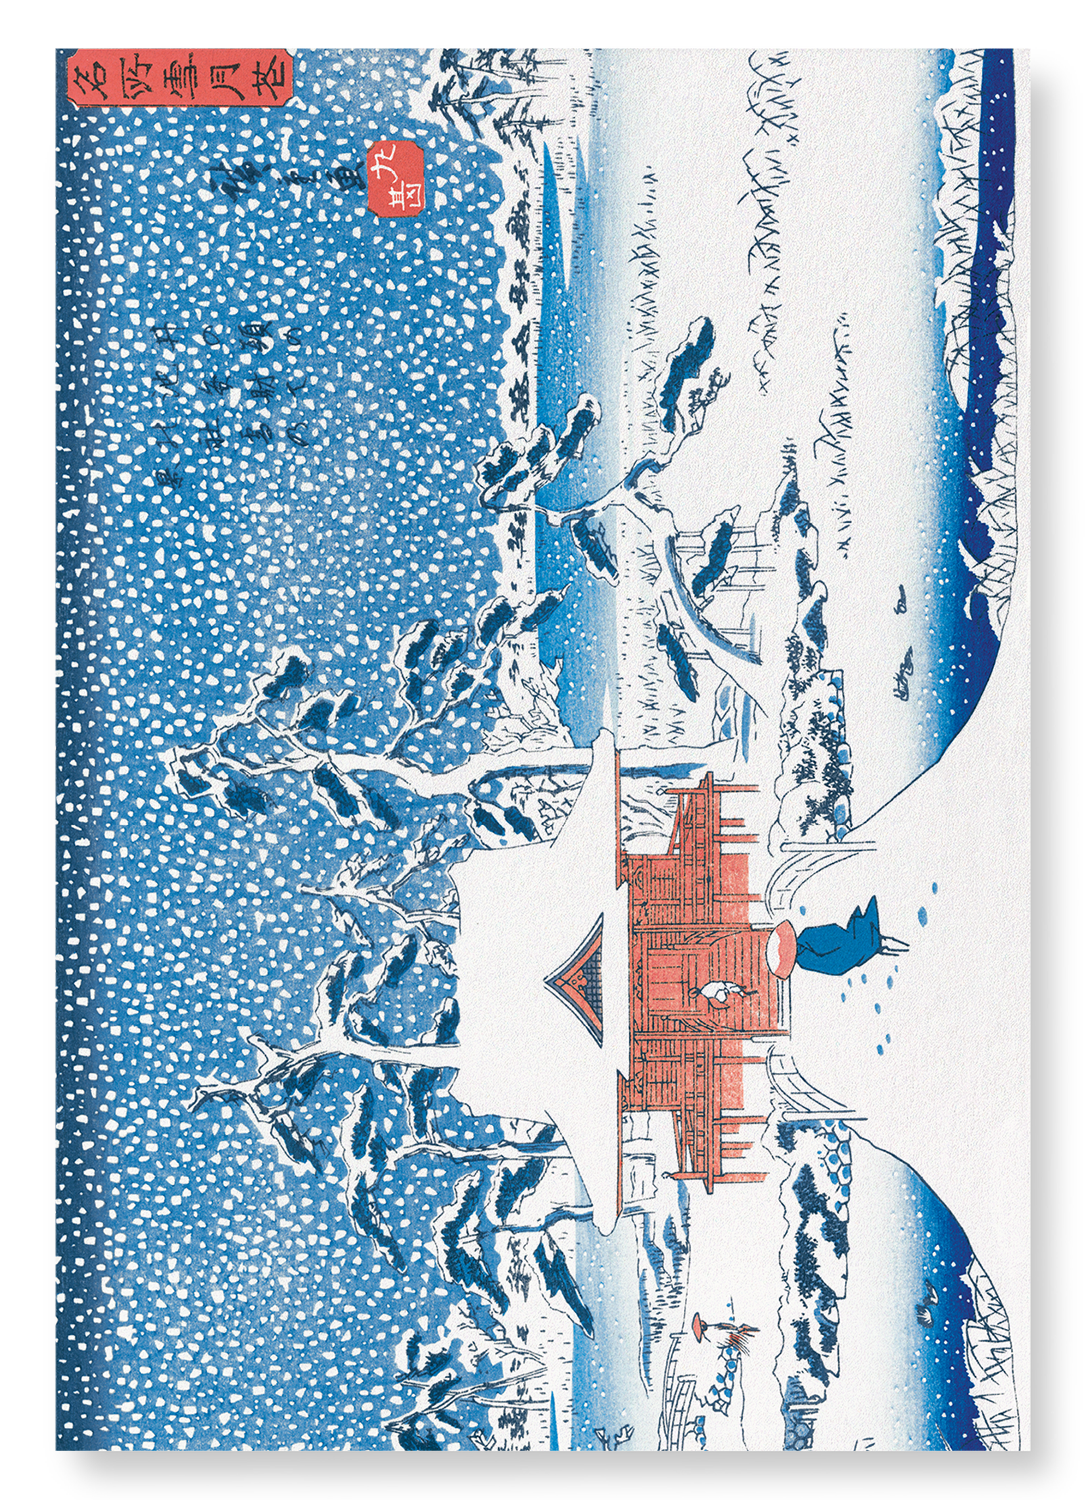 SNOW SCENE AT BENZAITEN SHRINE: Japanese Art Print